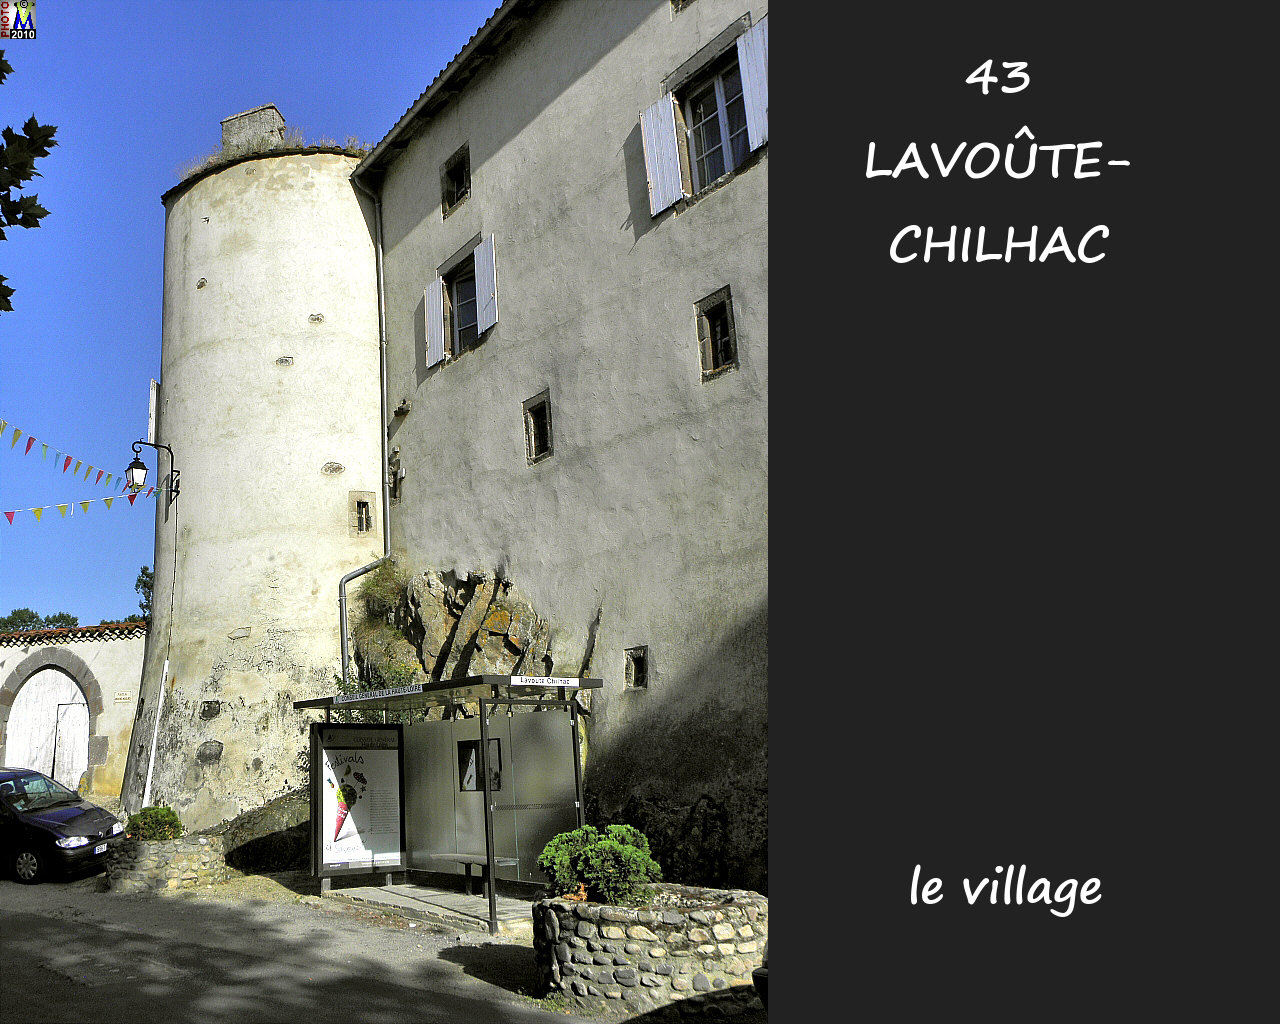 43LAVOUTE-CHILHAC_village_140.jpg